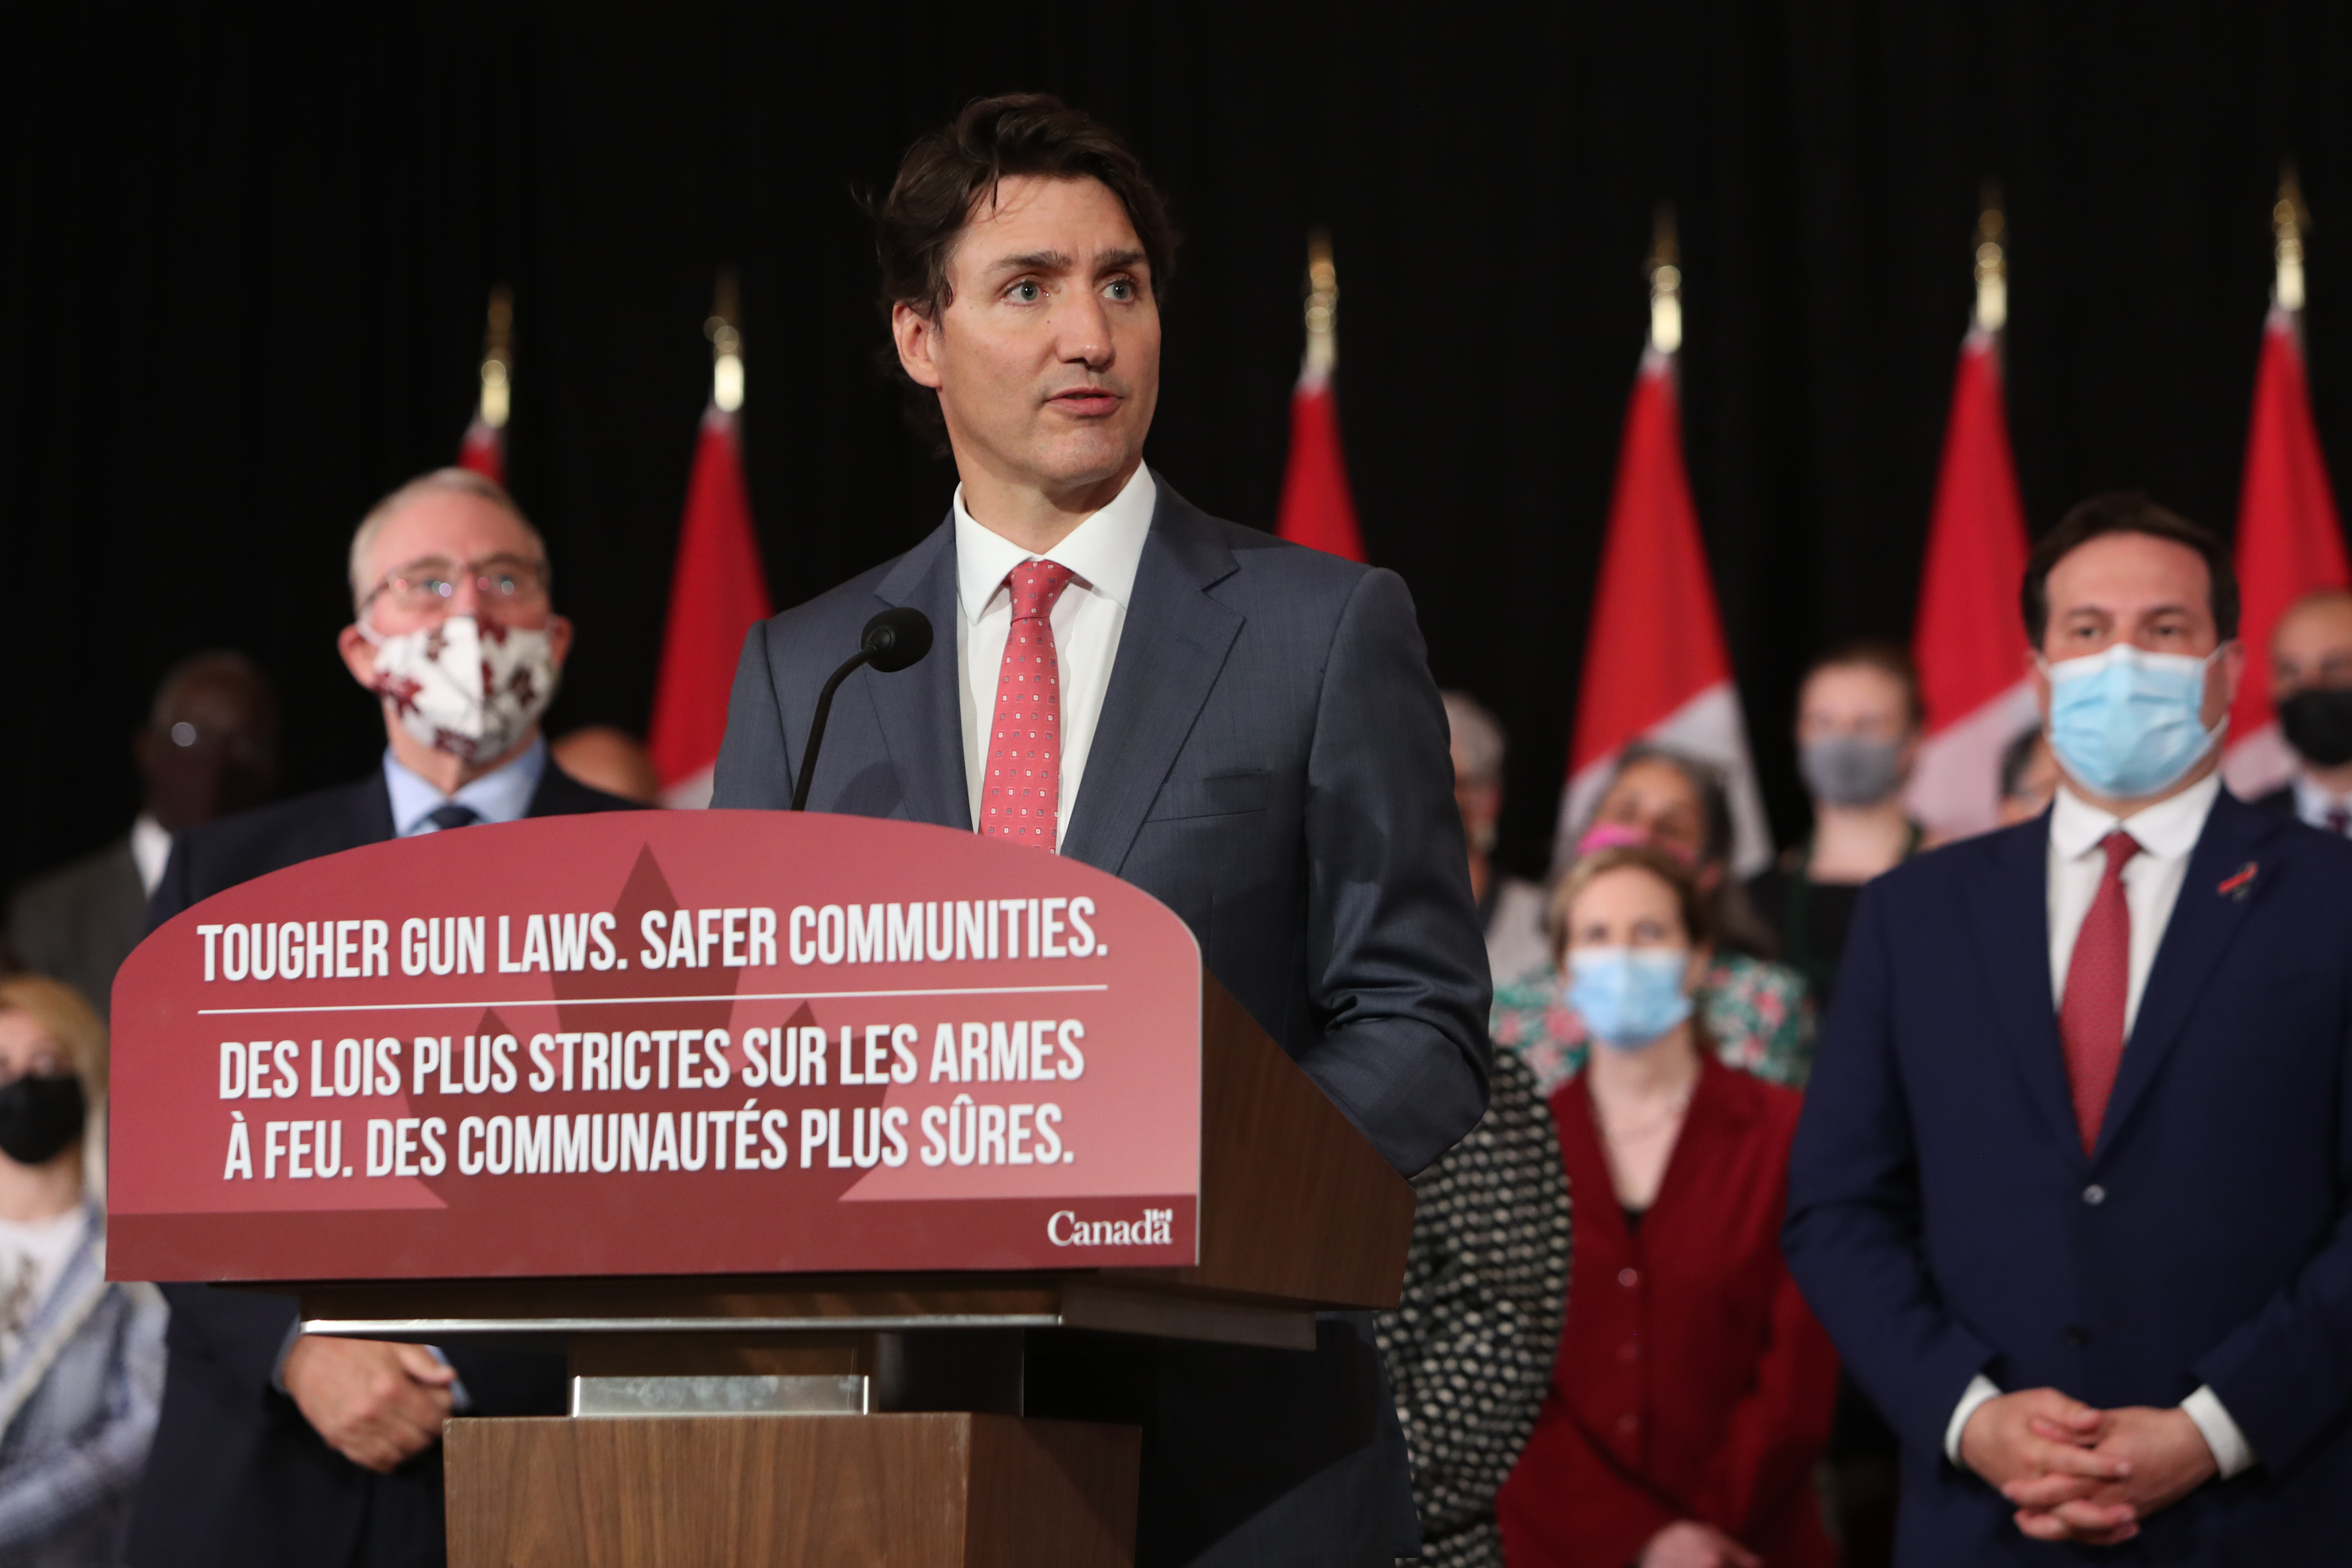 Canadian Prime Minister Justin Trudeau speaks on efforts against gun violence. 